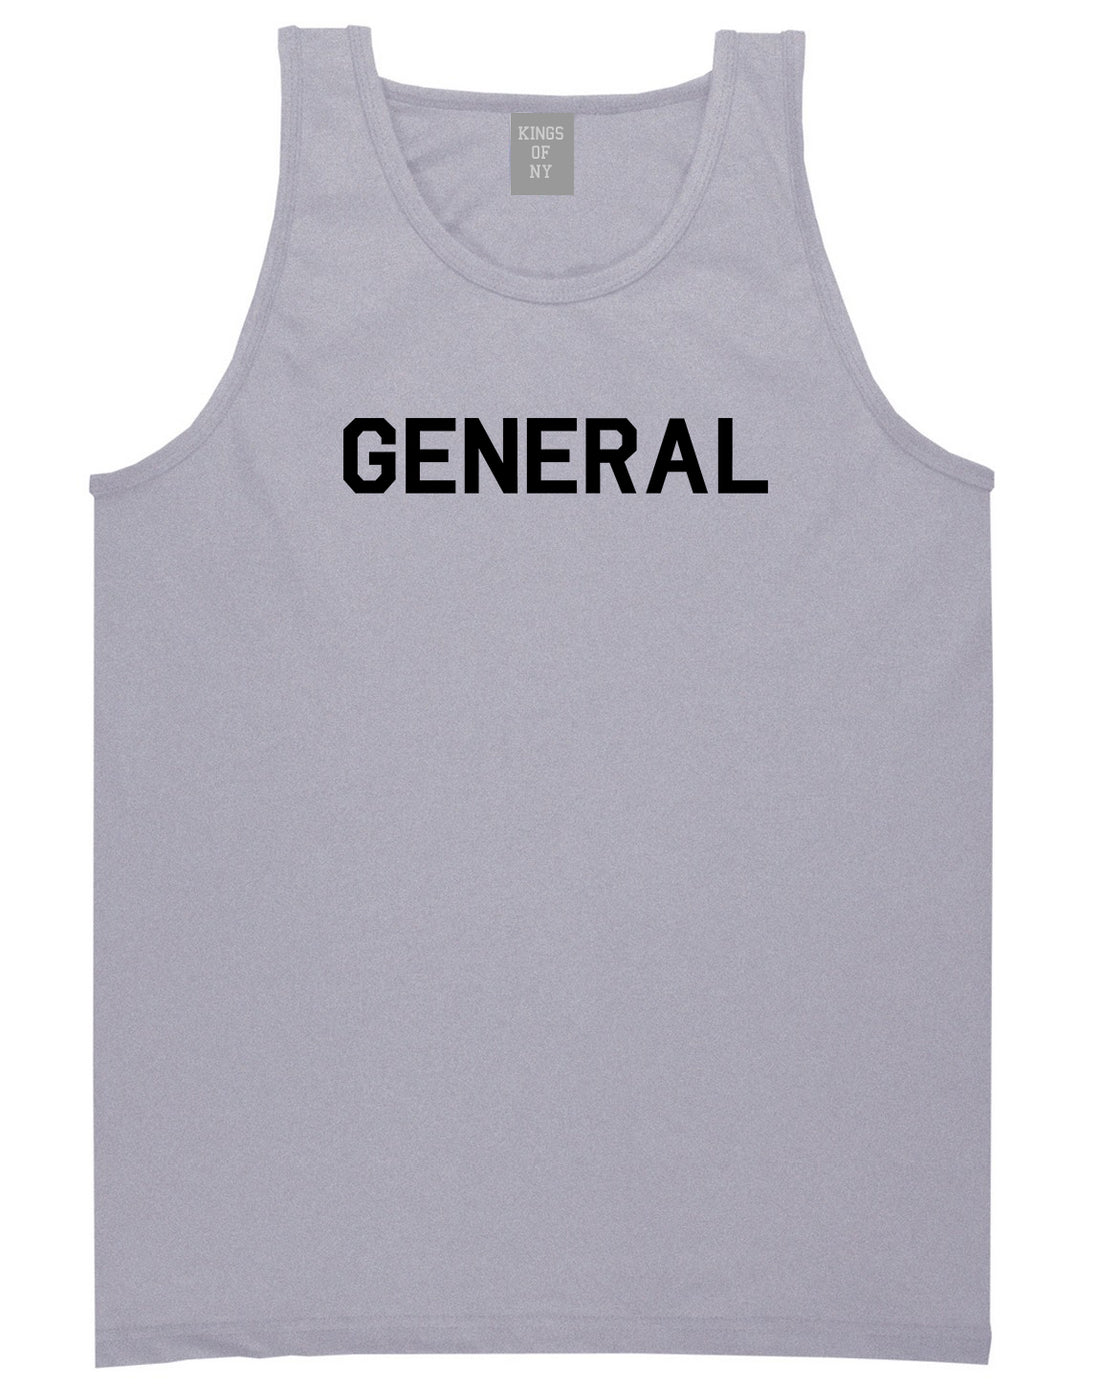 US General WW2 Mens Grey Tank Top Shirt by KINGS OF NY